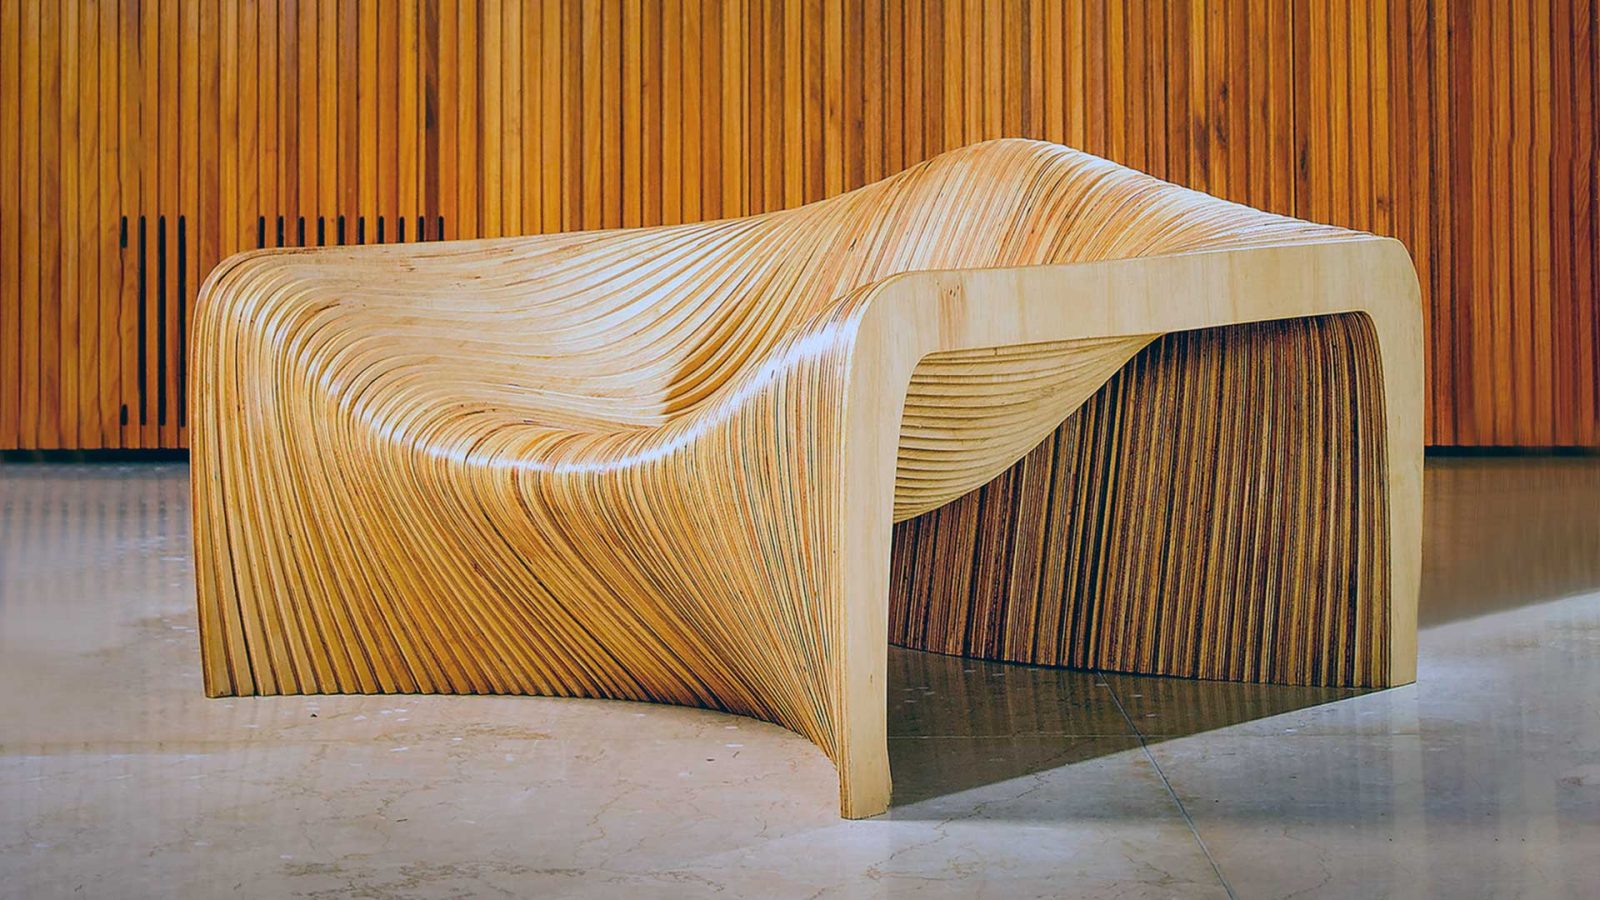 Inspirada no formato orgânico das dunas de Natal, RN, a poltrona Duna, do Estúdio Mula Preta venceu o A’Design Award e o Good Design Chicago, em 2013. Imagem: Divulgação.